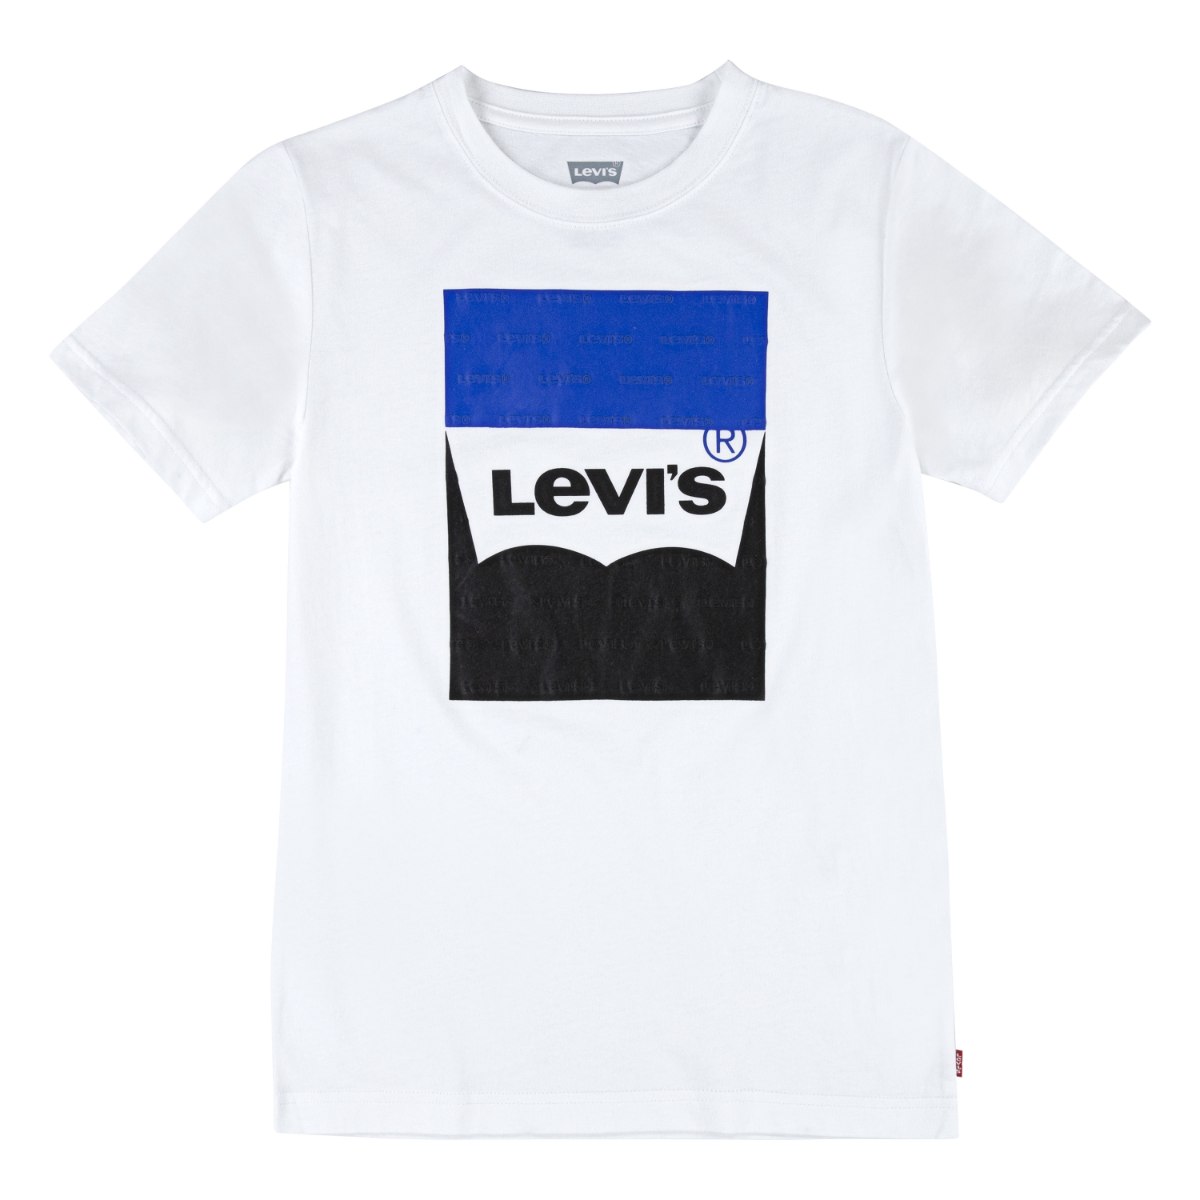 חולצת טישרט לוגו שחור כחול LEVIS